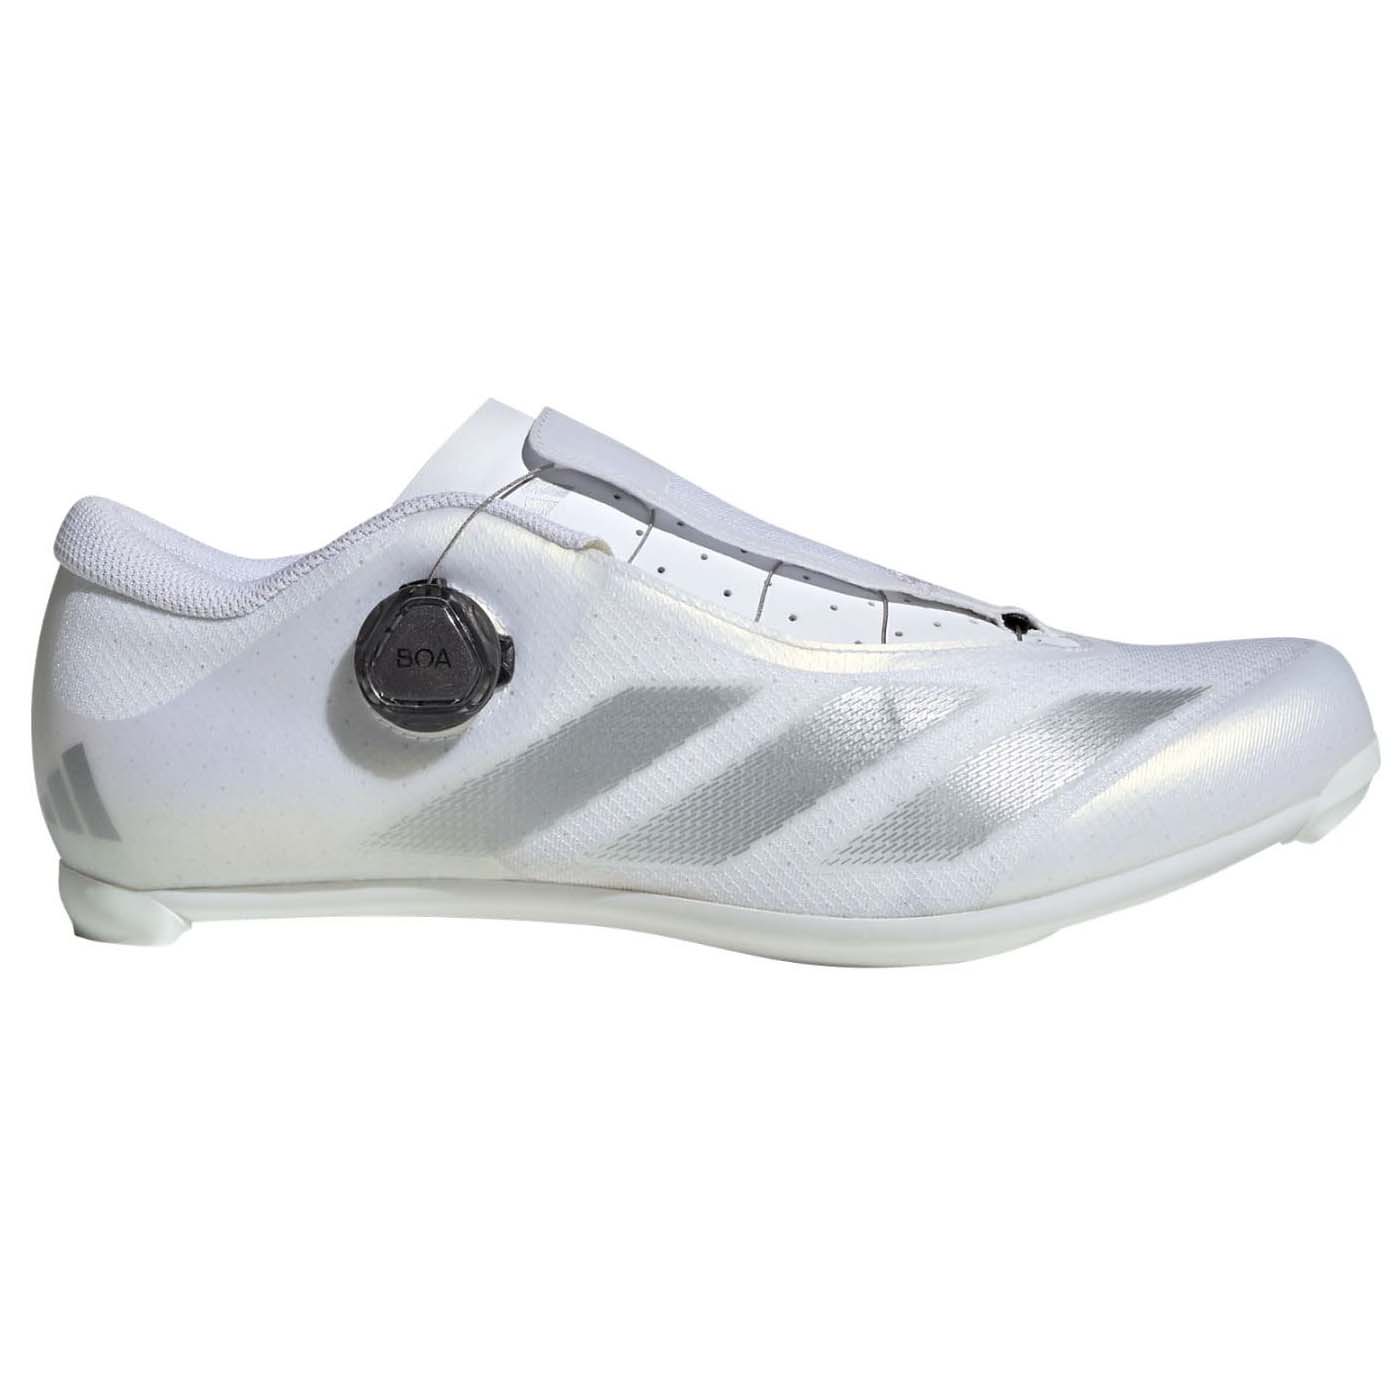 Кроссовки Adidas Performance Cycling, белый/серебристый/черный